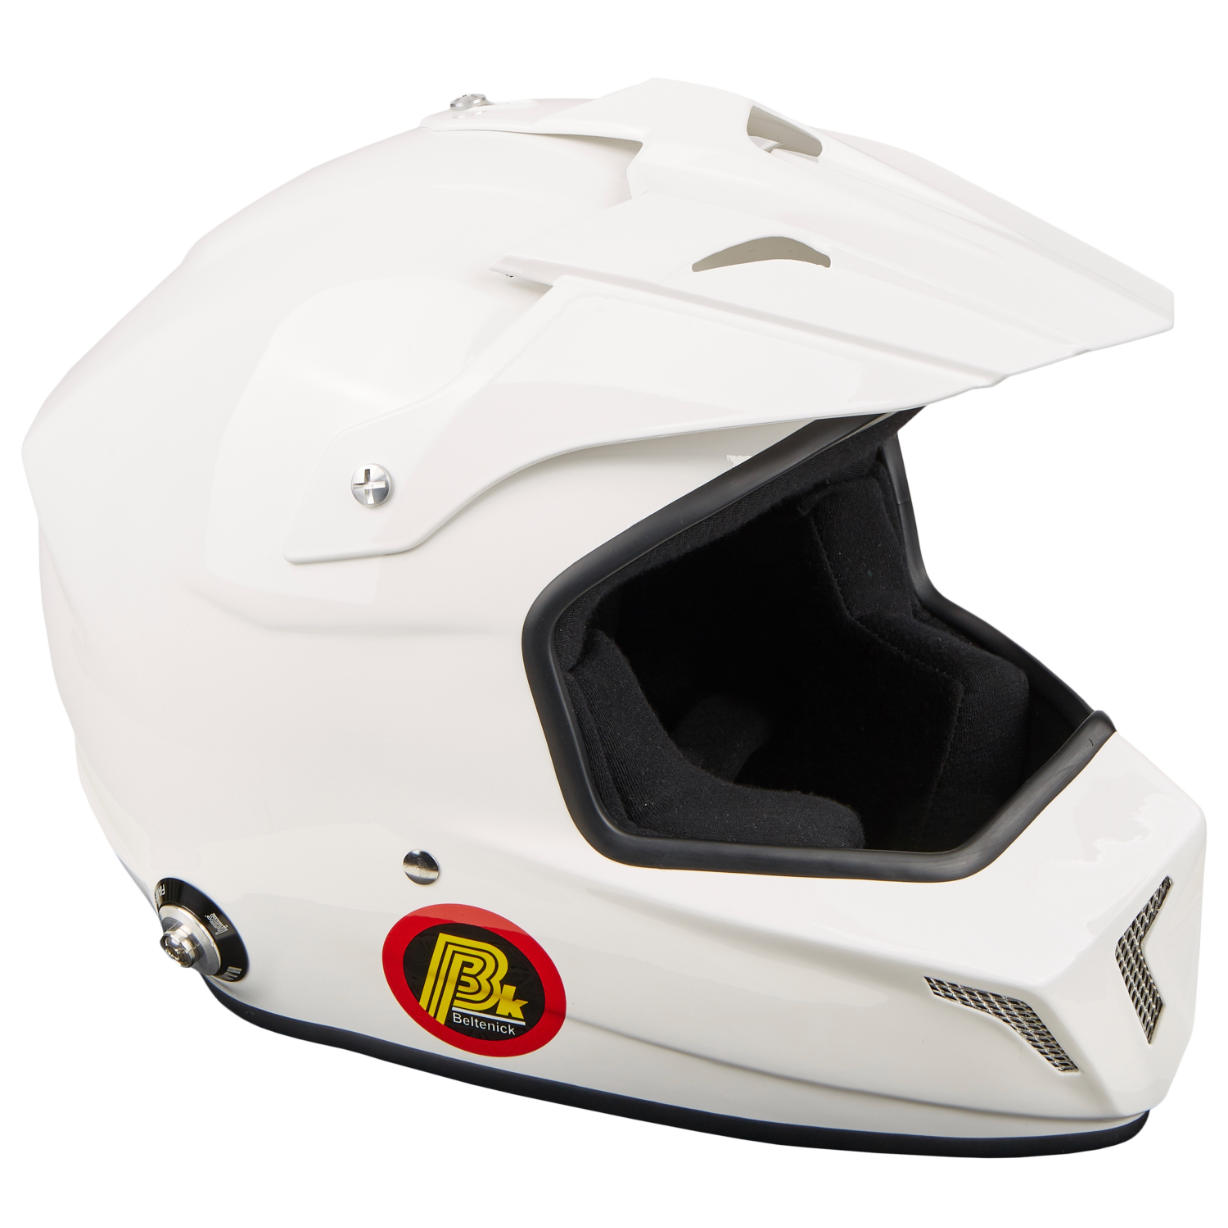 BELTENICK CROSS шлем для автоспорта (под кроссовые очки) (HANS), белый, р-р XXL - DARK-STOCK.RU